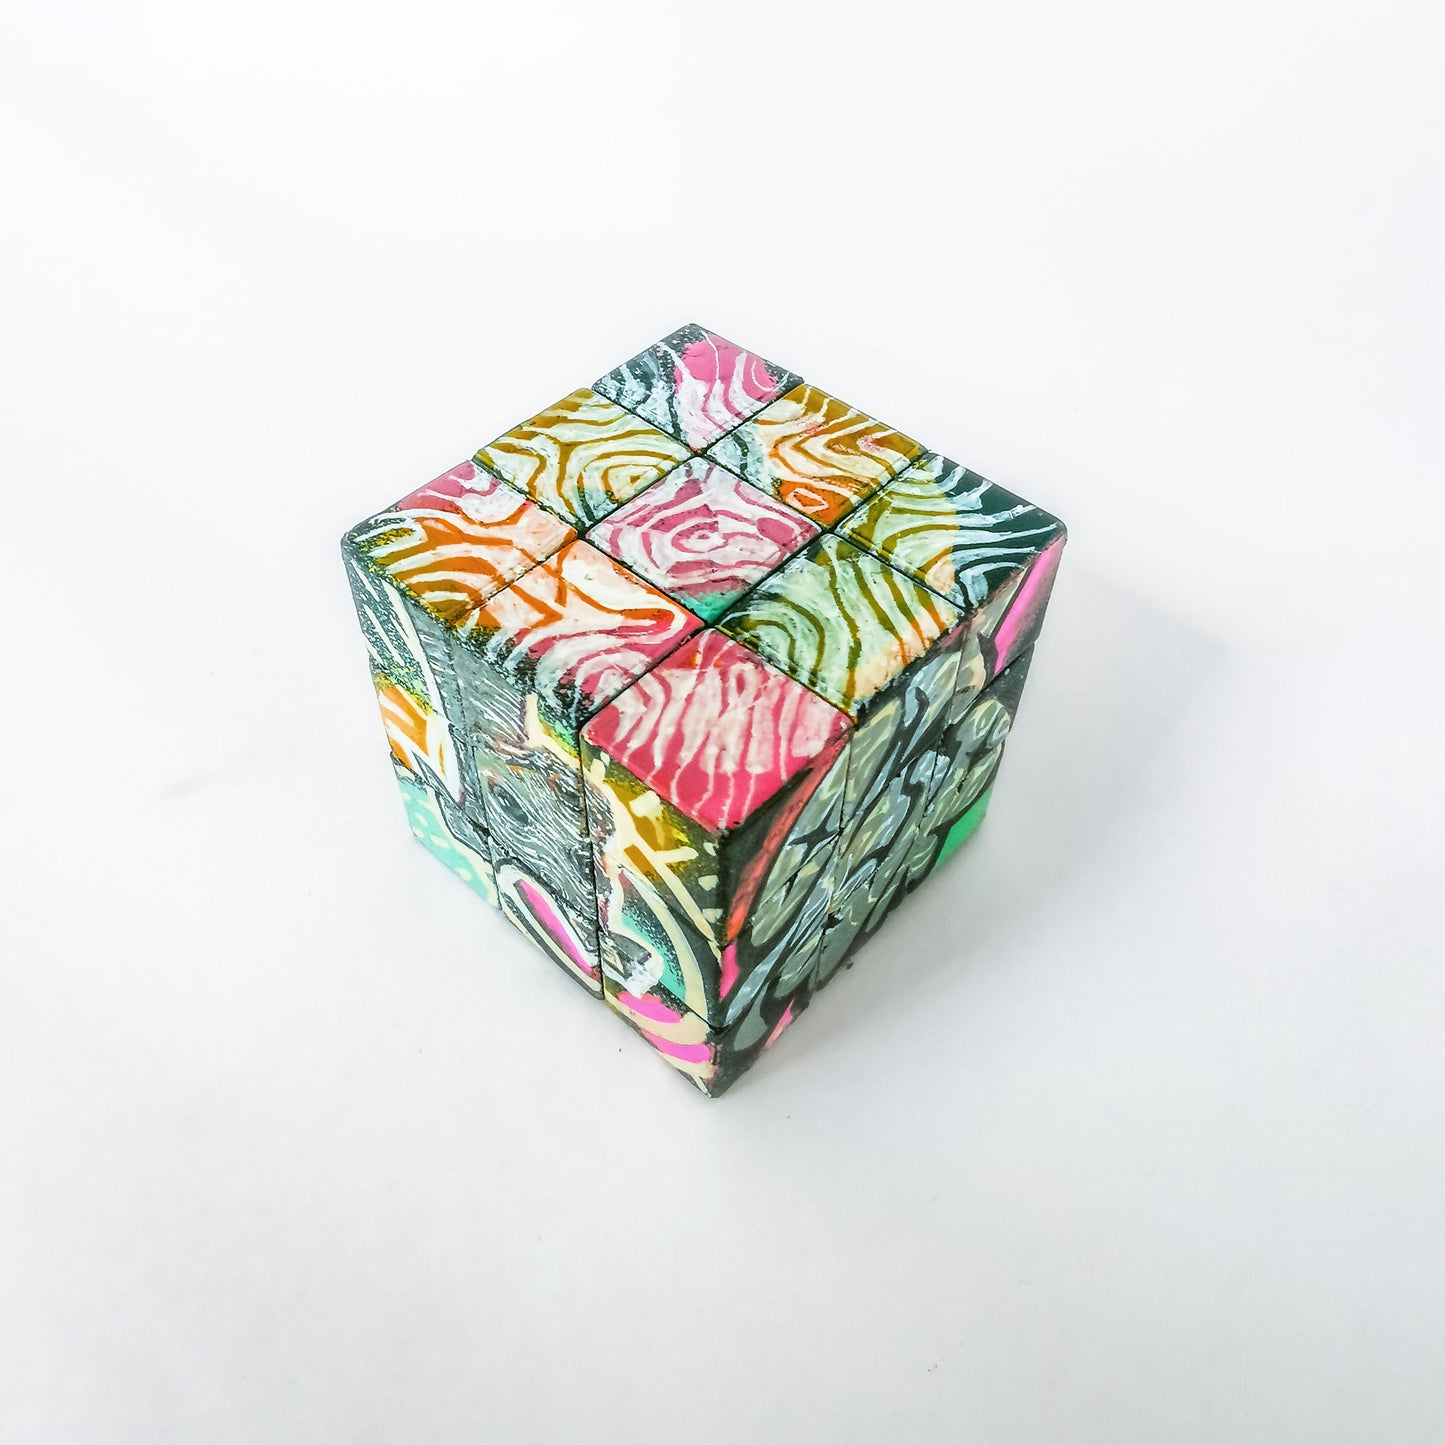 Art Object Rubik-Cube - "RubickOne"